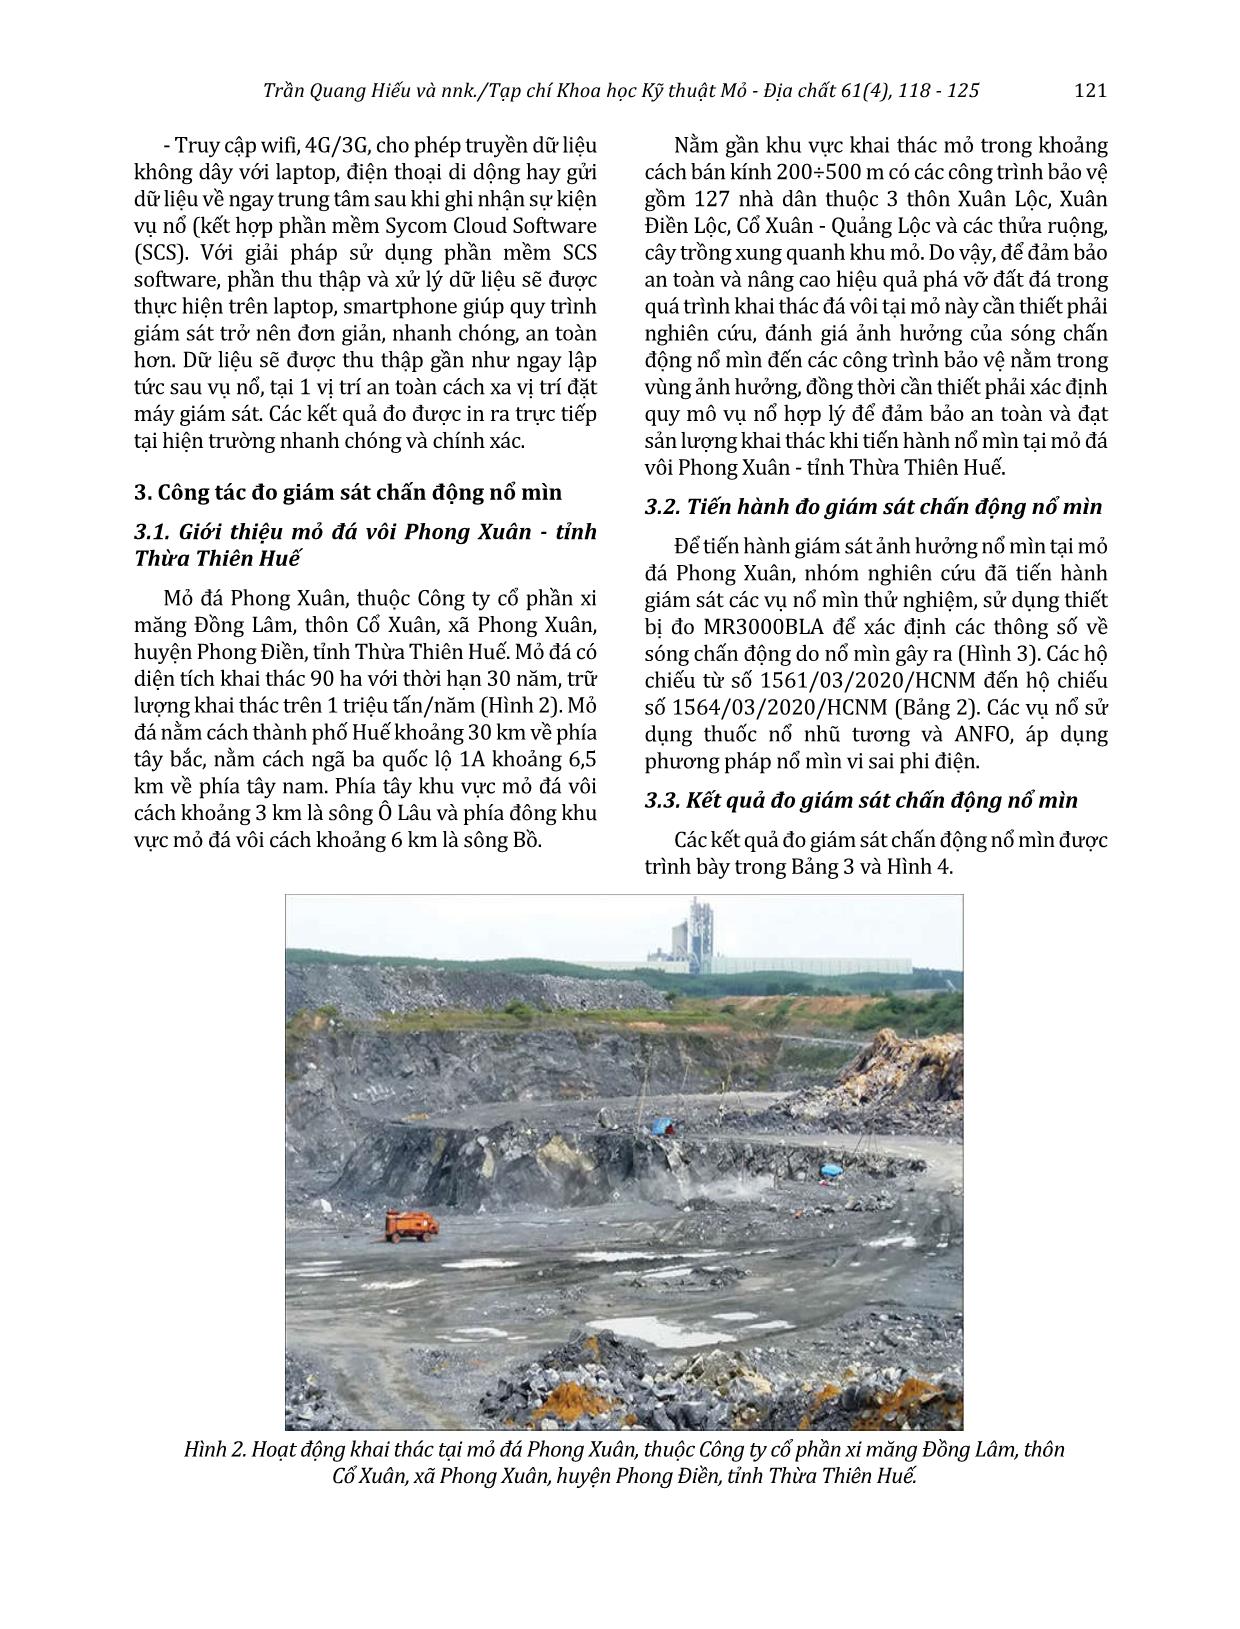 Đánh giá ảnh hưởng của sóng chấn động nổ mìn đến các công trình bảo vệ và xác định quy mô vụ nổ hợp lý cho mỏ đá vôi Phong Xuân - Thừa Thiên Huế trang 4